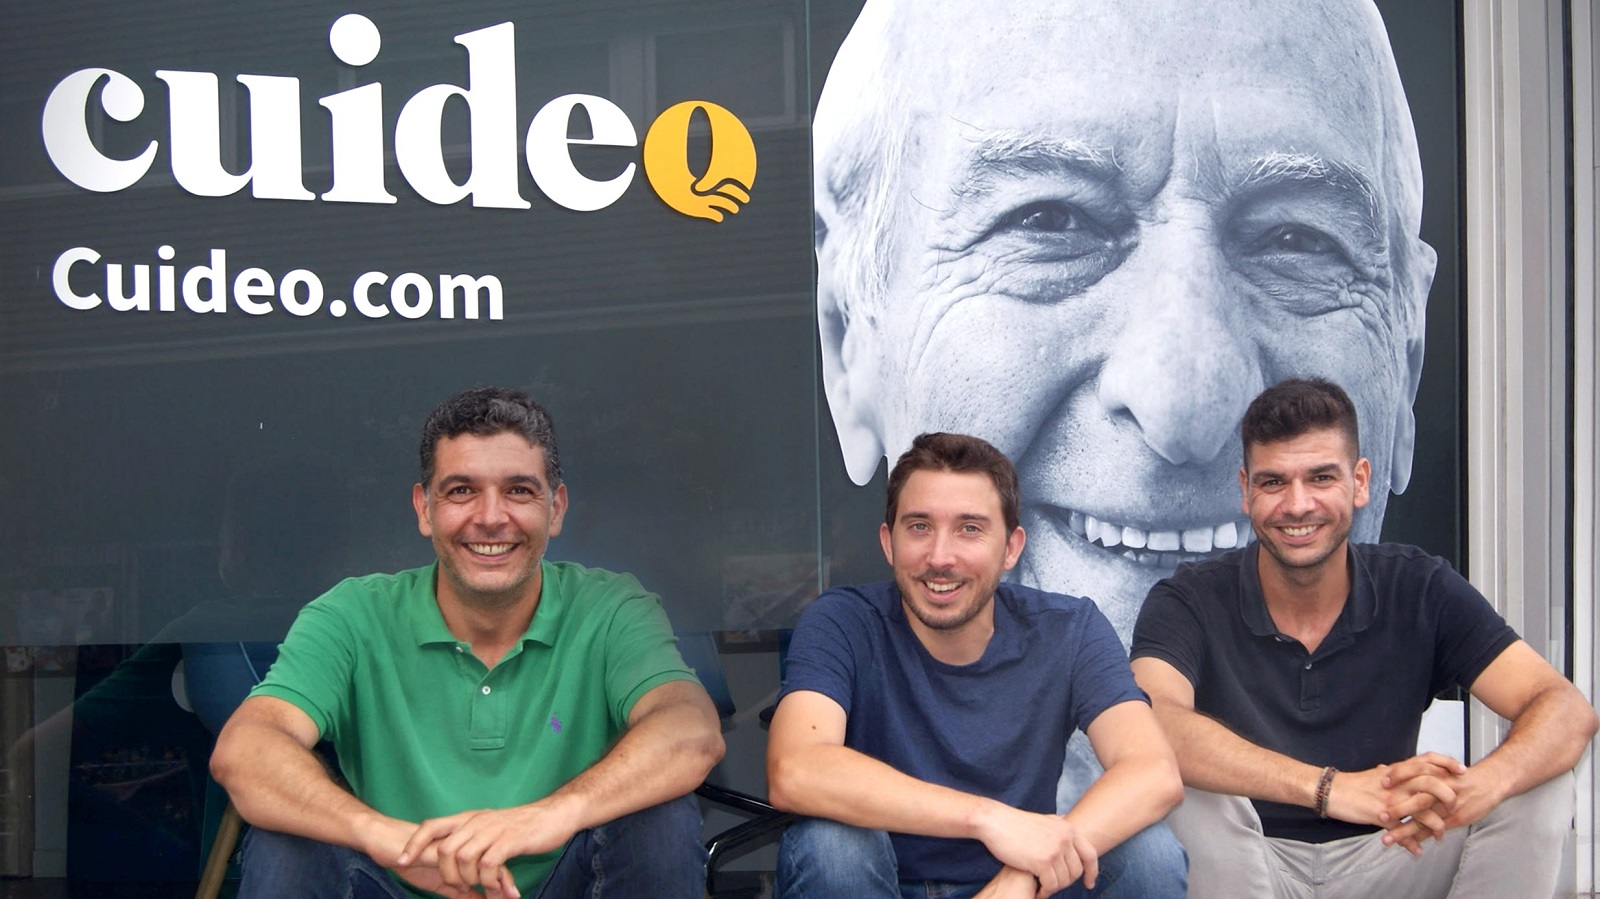 La startup barcelonesa “Cuideo” experta en el cuidado de adultos mayores